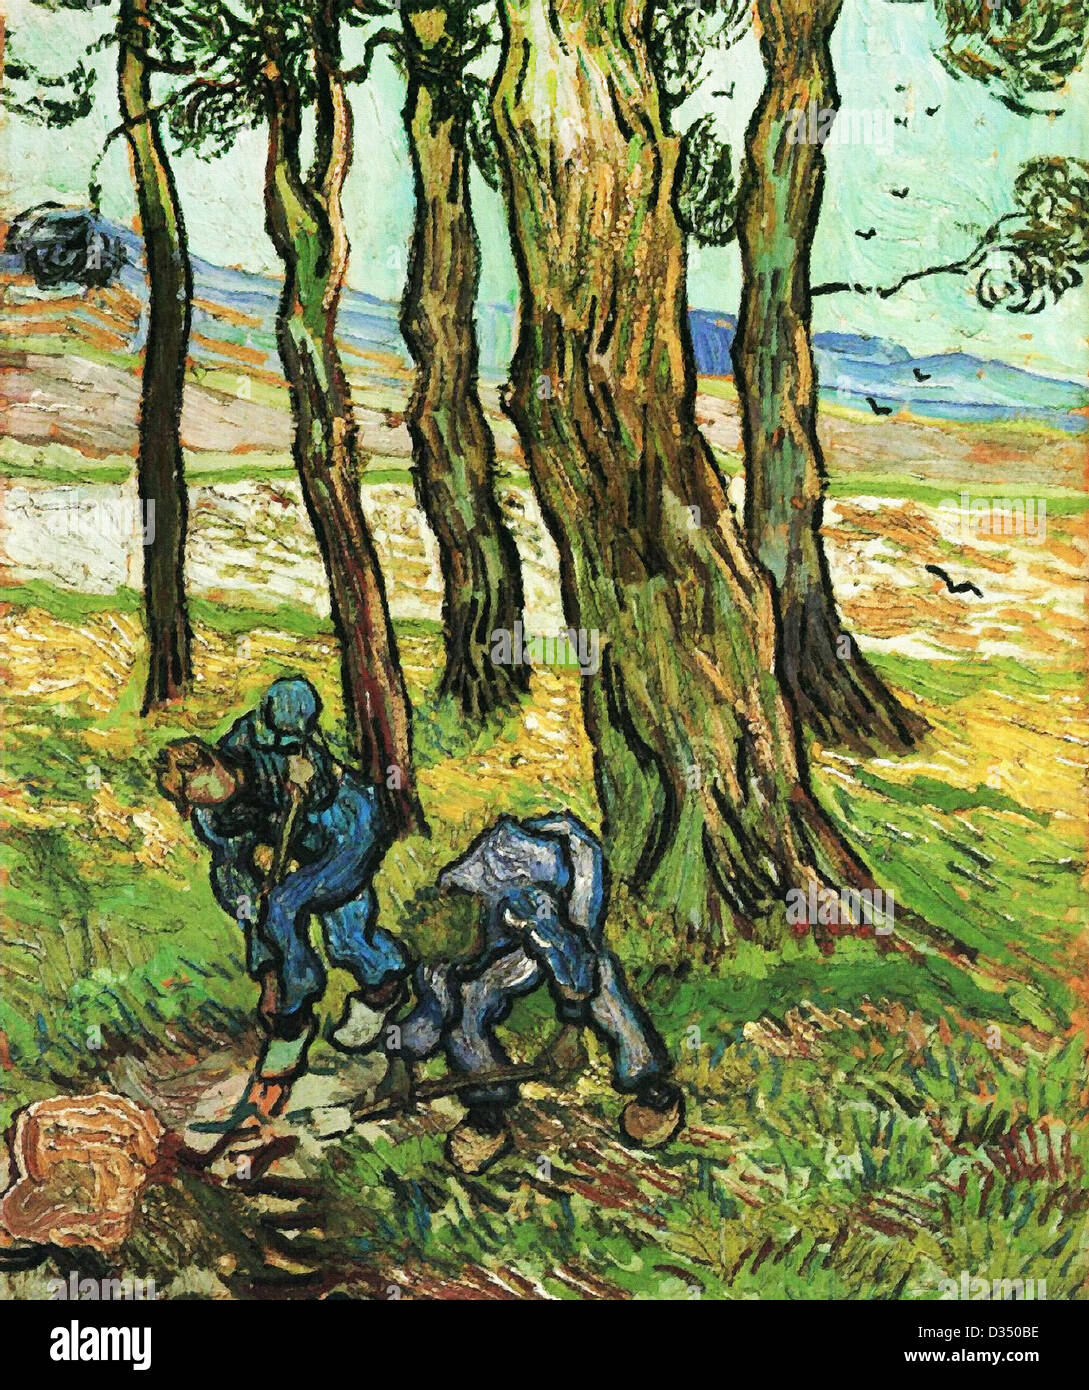 Vincent van Gogh, deux Diggers entre les arbres. 1889. Le postimpressionnisme. Huile sur toile. Detroit Institute of Arts, Detroit, MI, USA. Banque D'Images